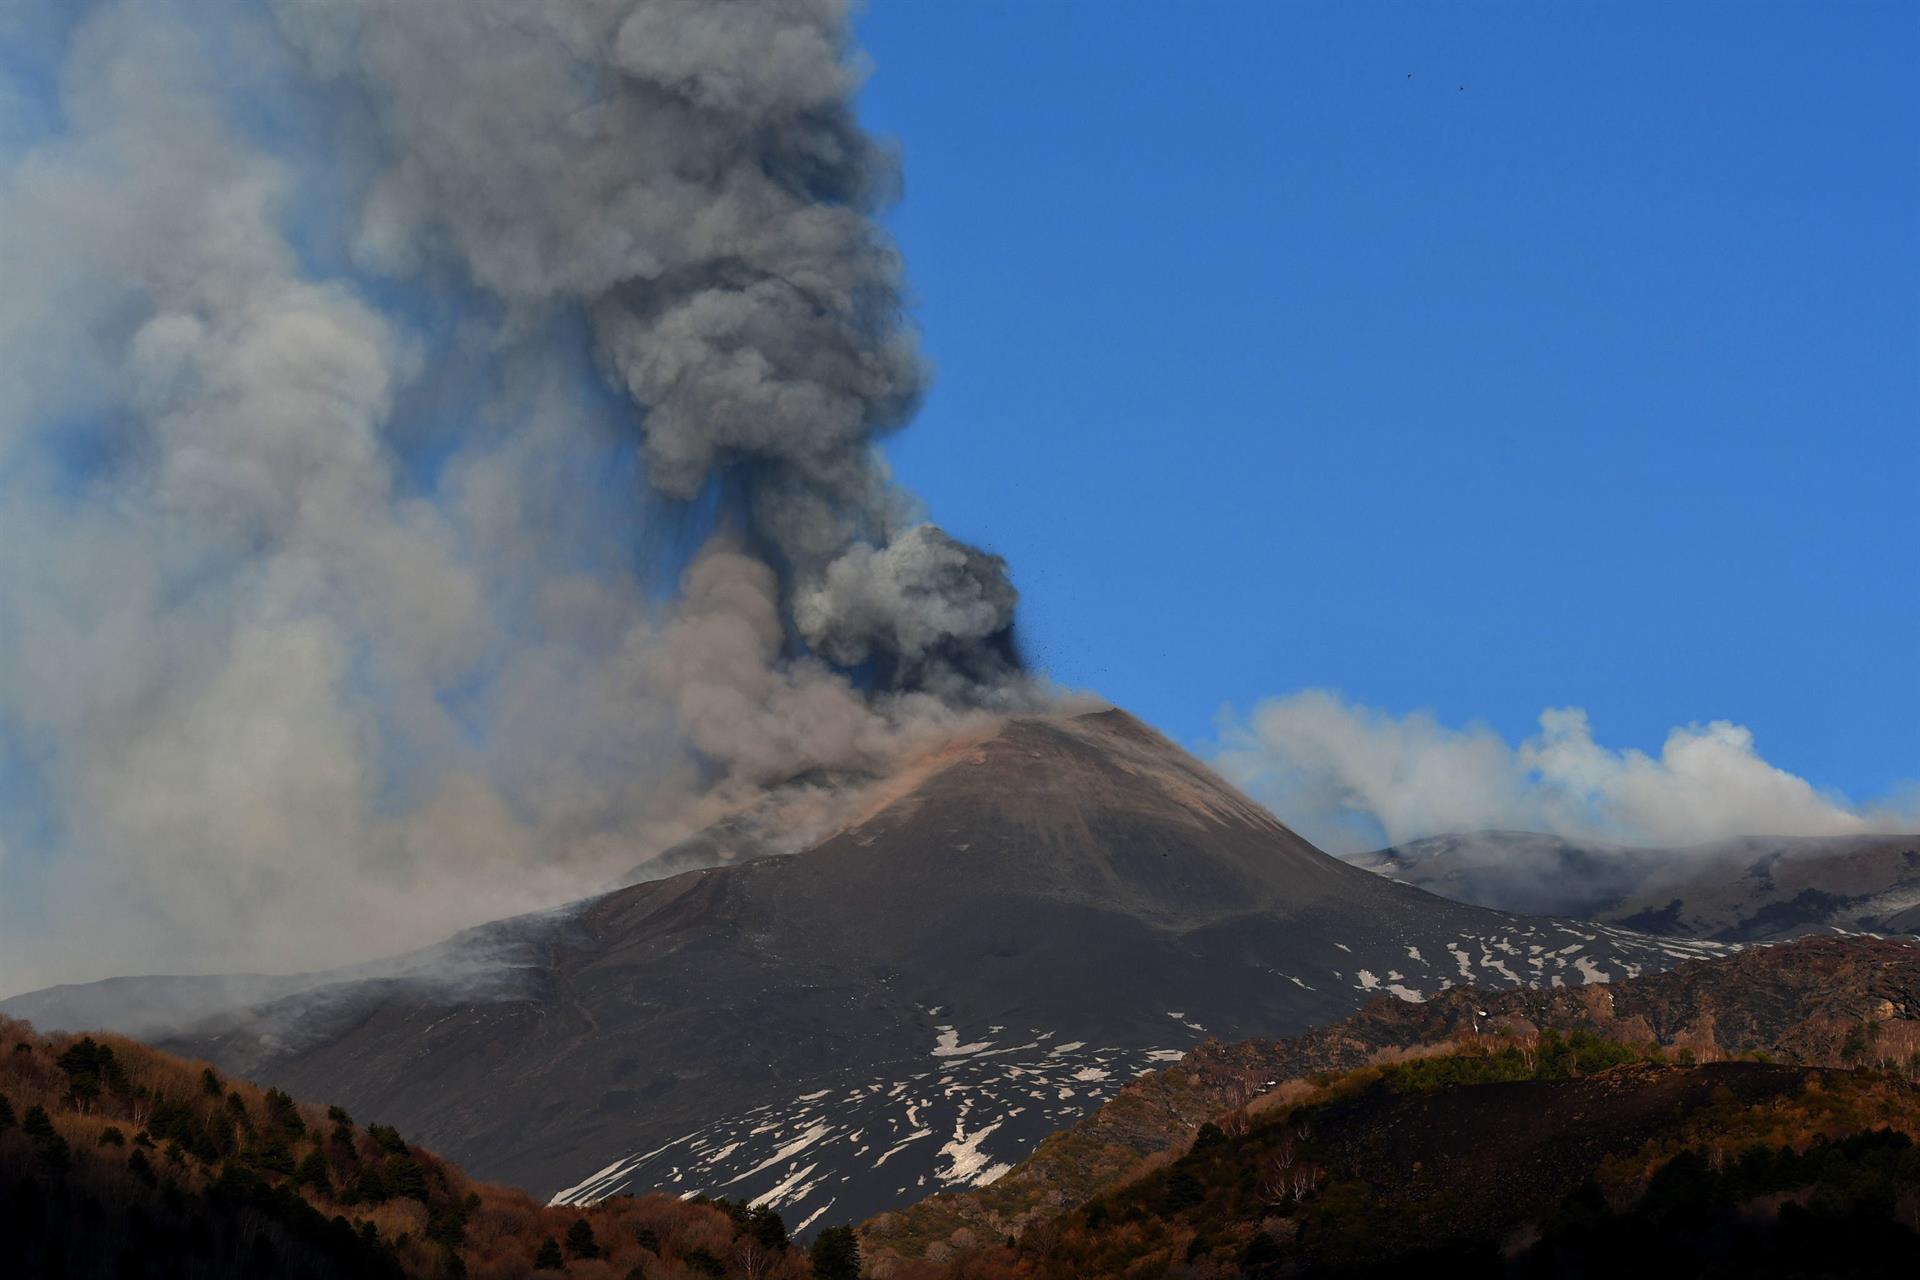 El volcán Etna en Italia ha experimentado una nueva erupción con emisión de cenizas y lava